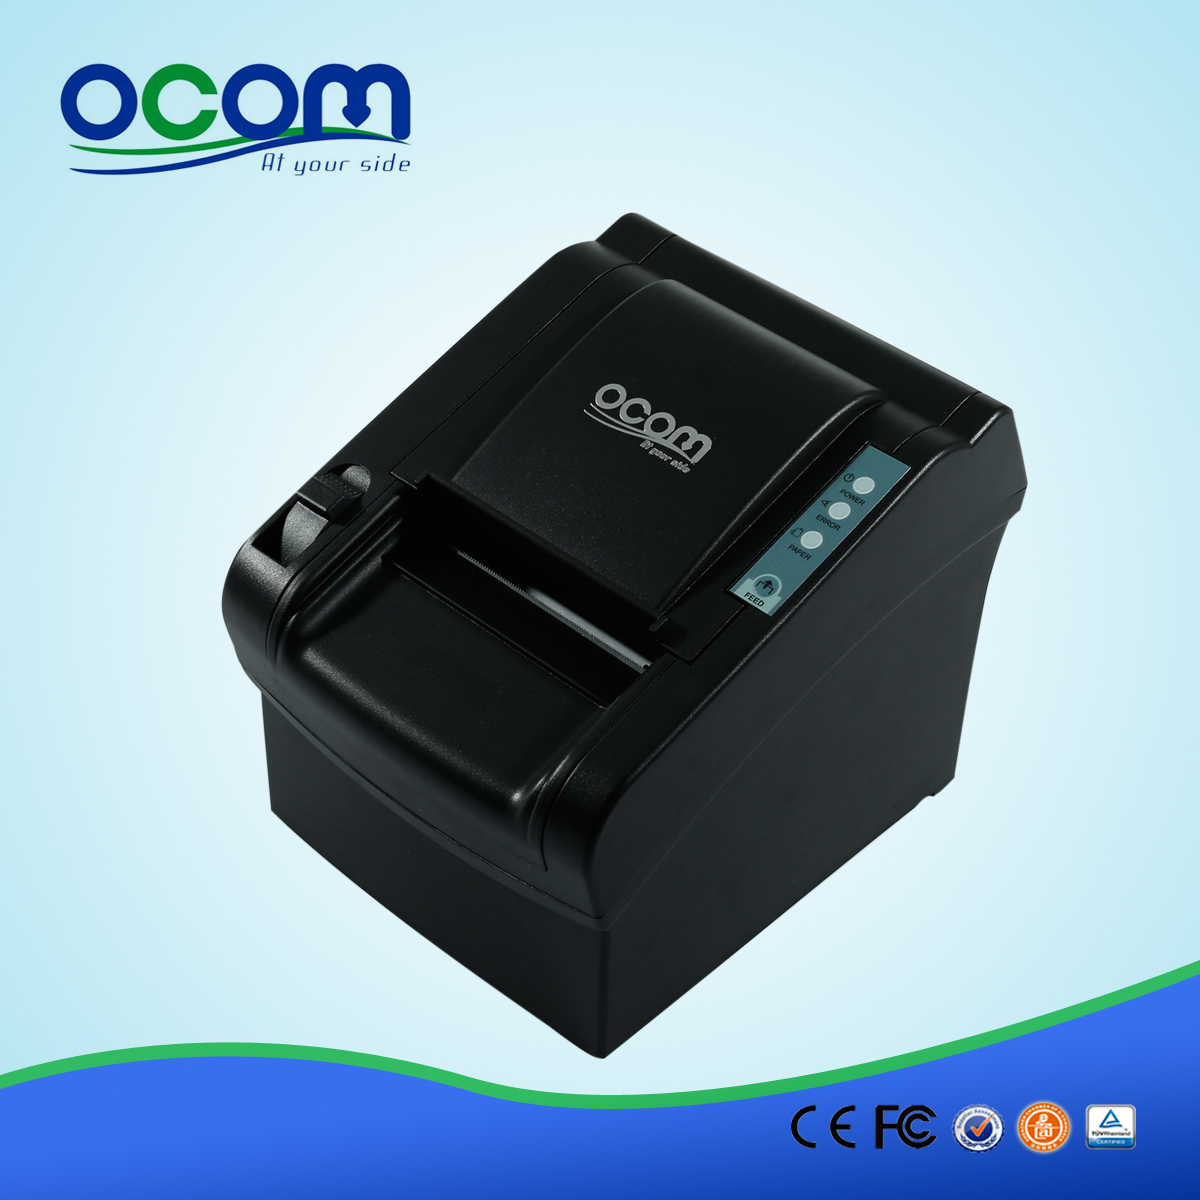 OCPP-802: alimentazione pos modulo stampante termica, stampante termica per ricevute 80 millimetri